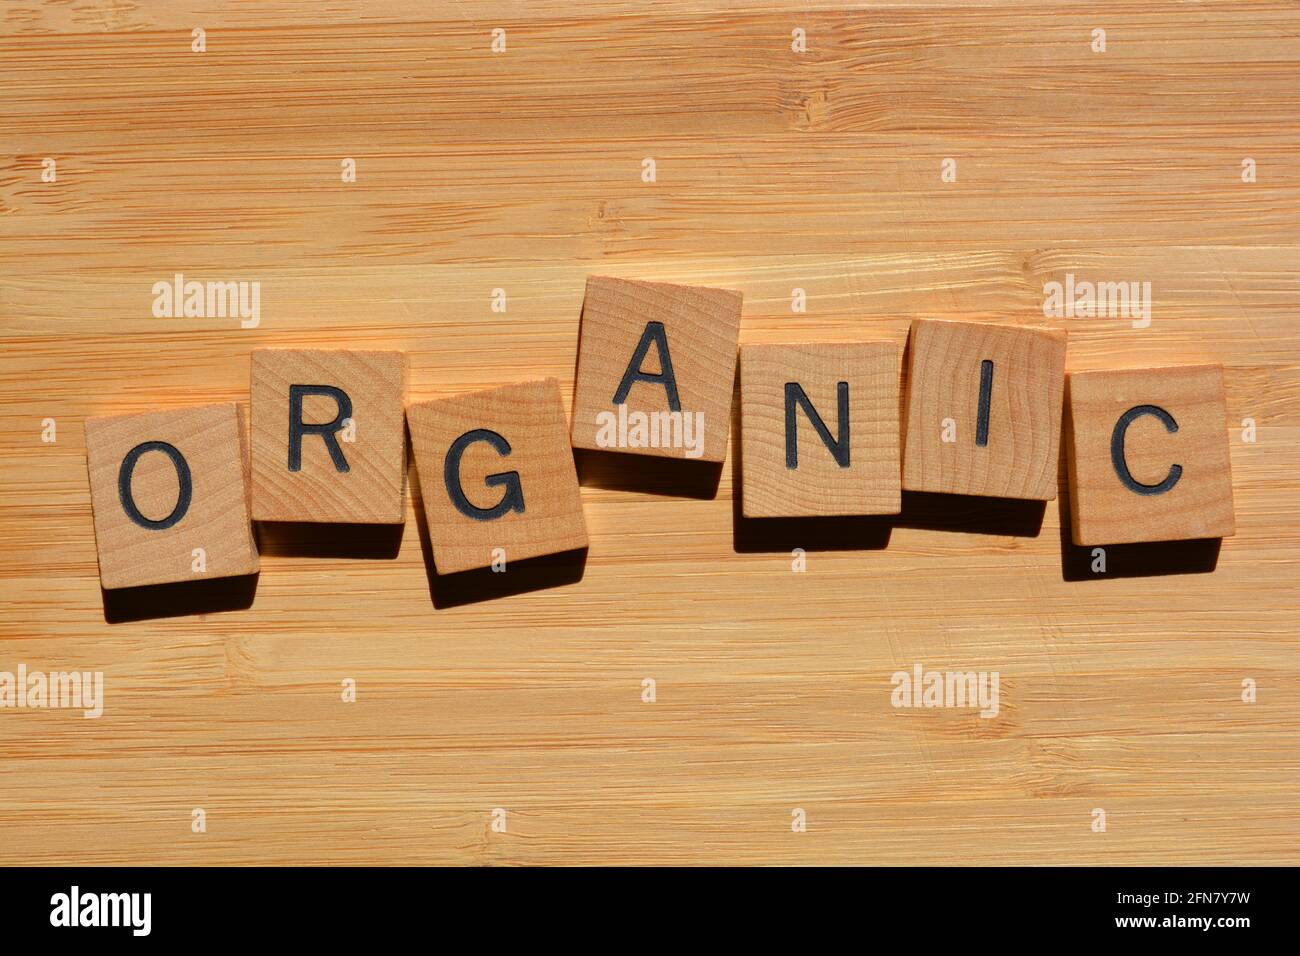 Orgánico, palabra en letras del alfabeto de madera aisladas sobre el fondo de madera de bambú Foto de stock